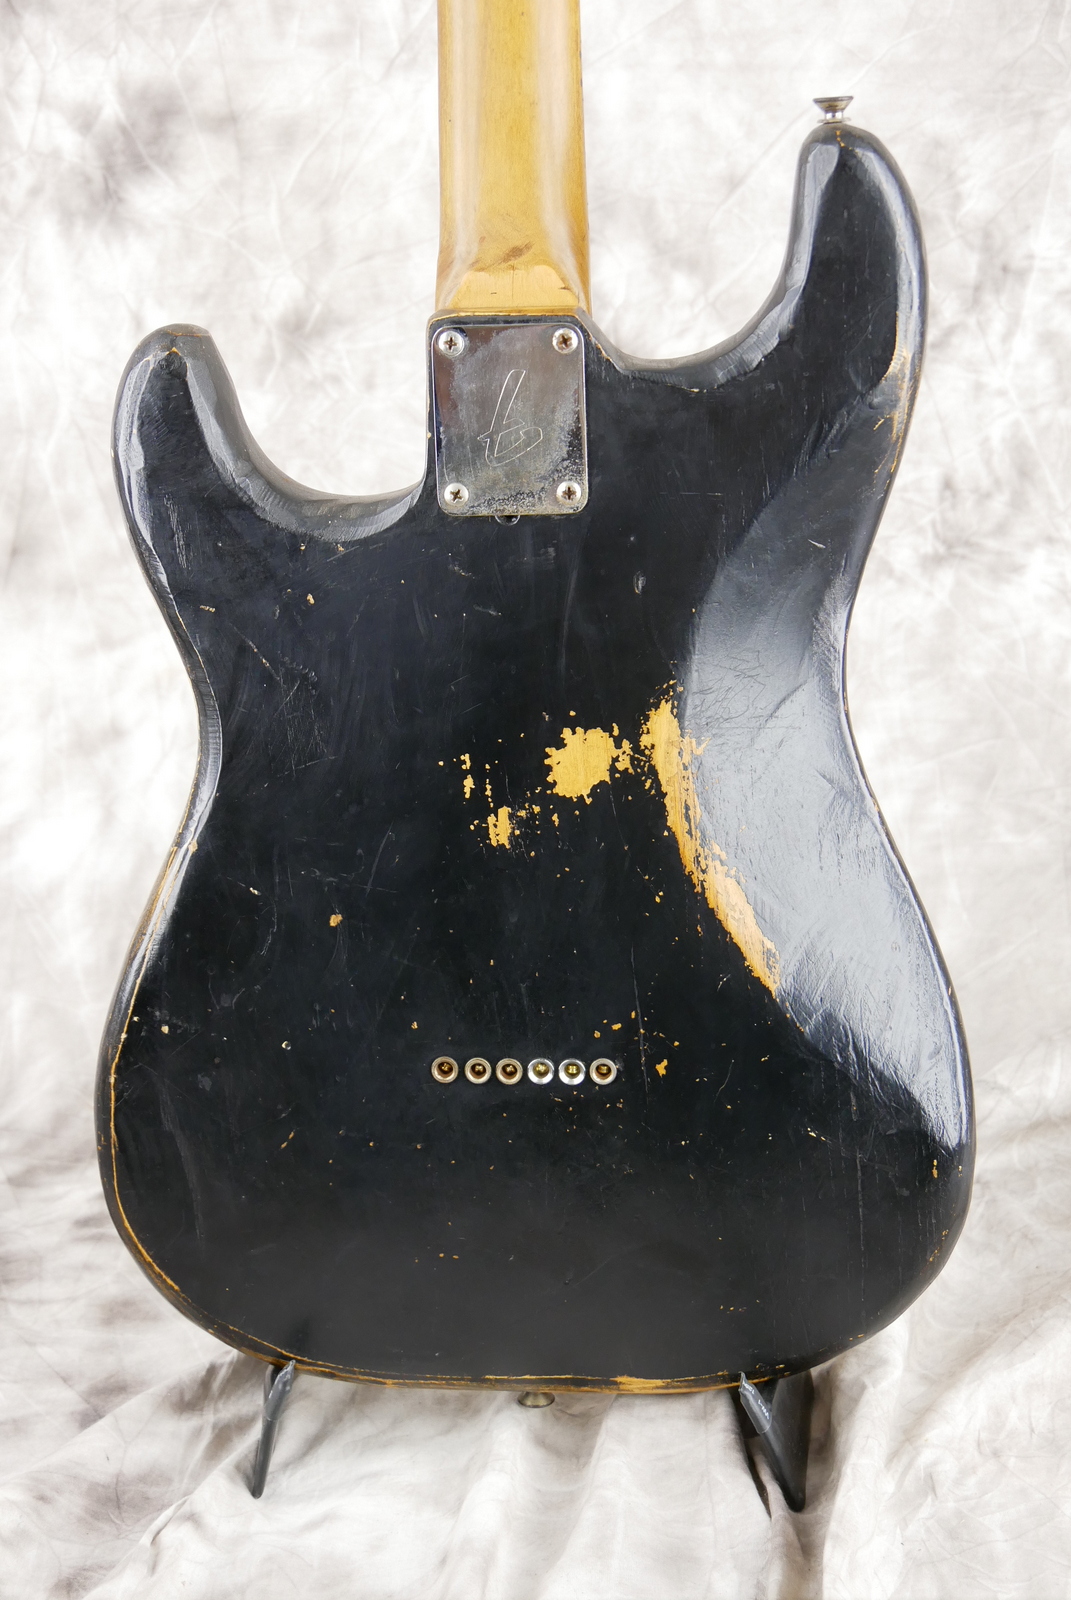 Fender_Stratocaster_one_humbucker_tinkered_black_1971_73-004.JPG